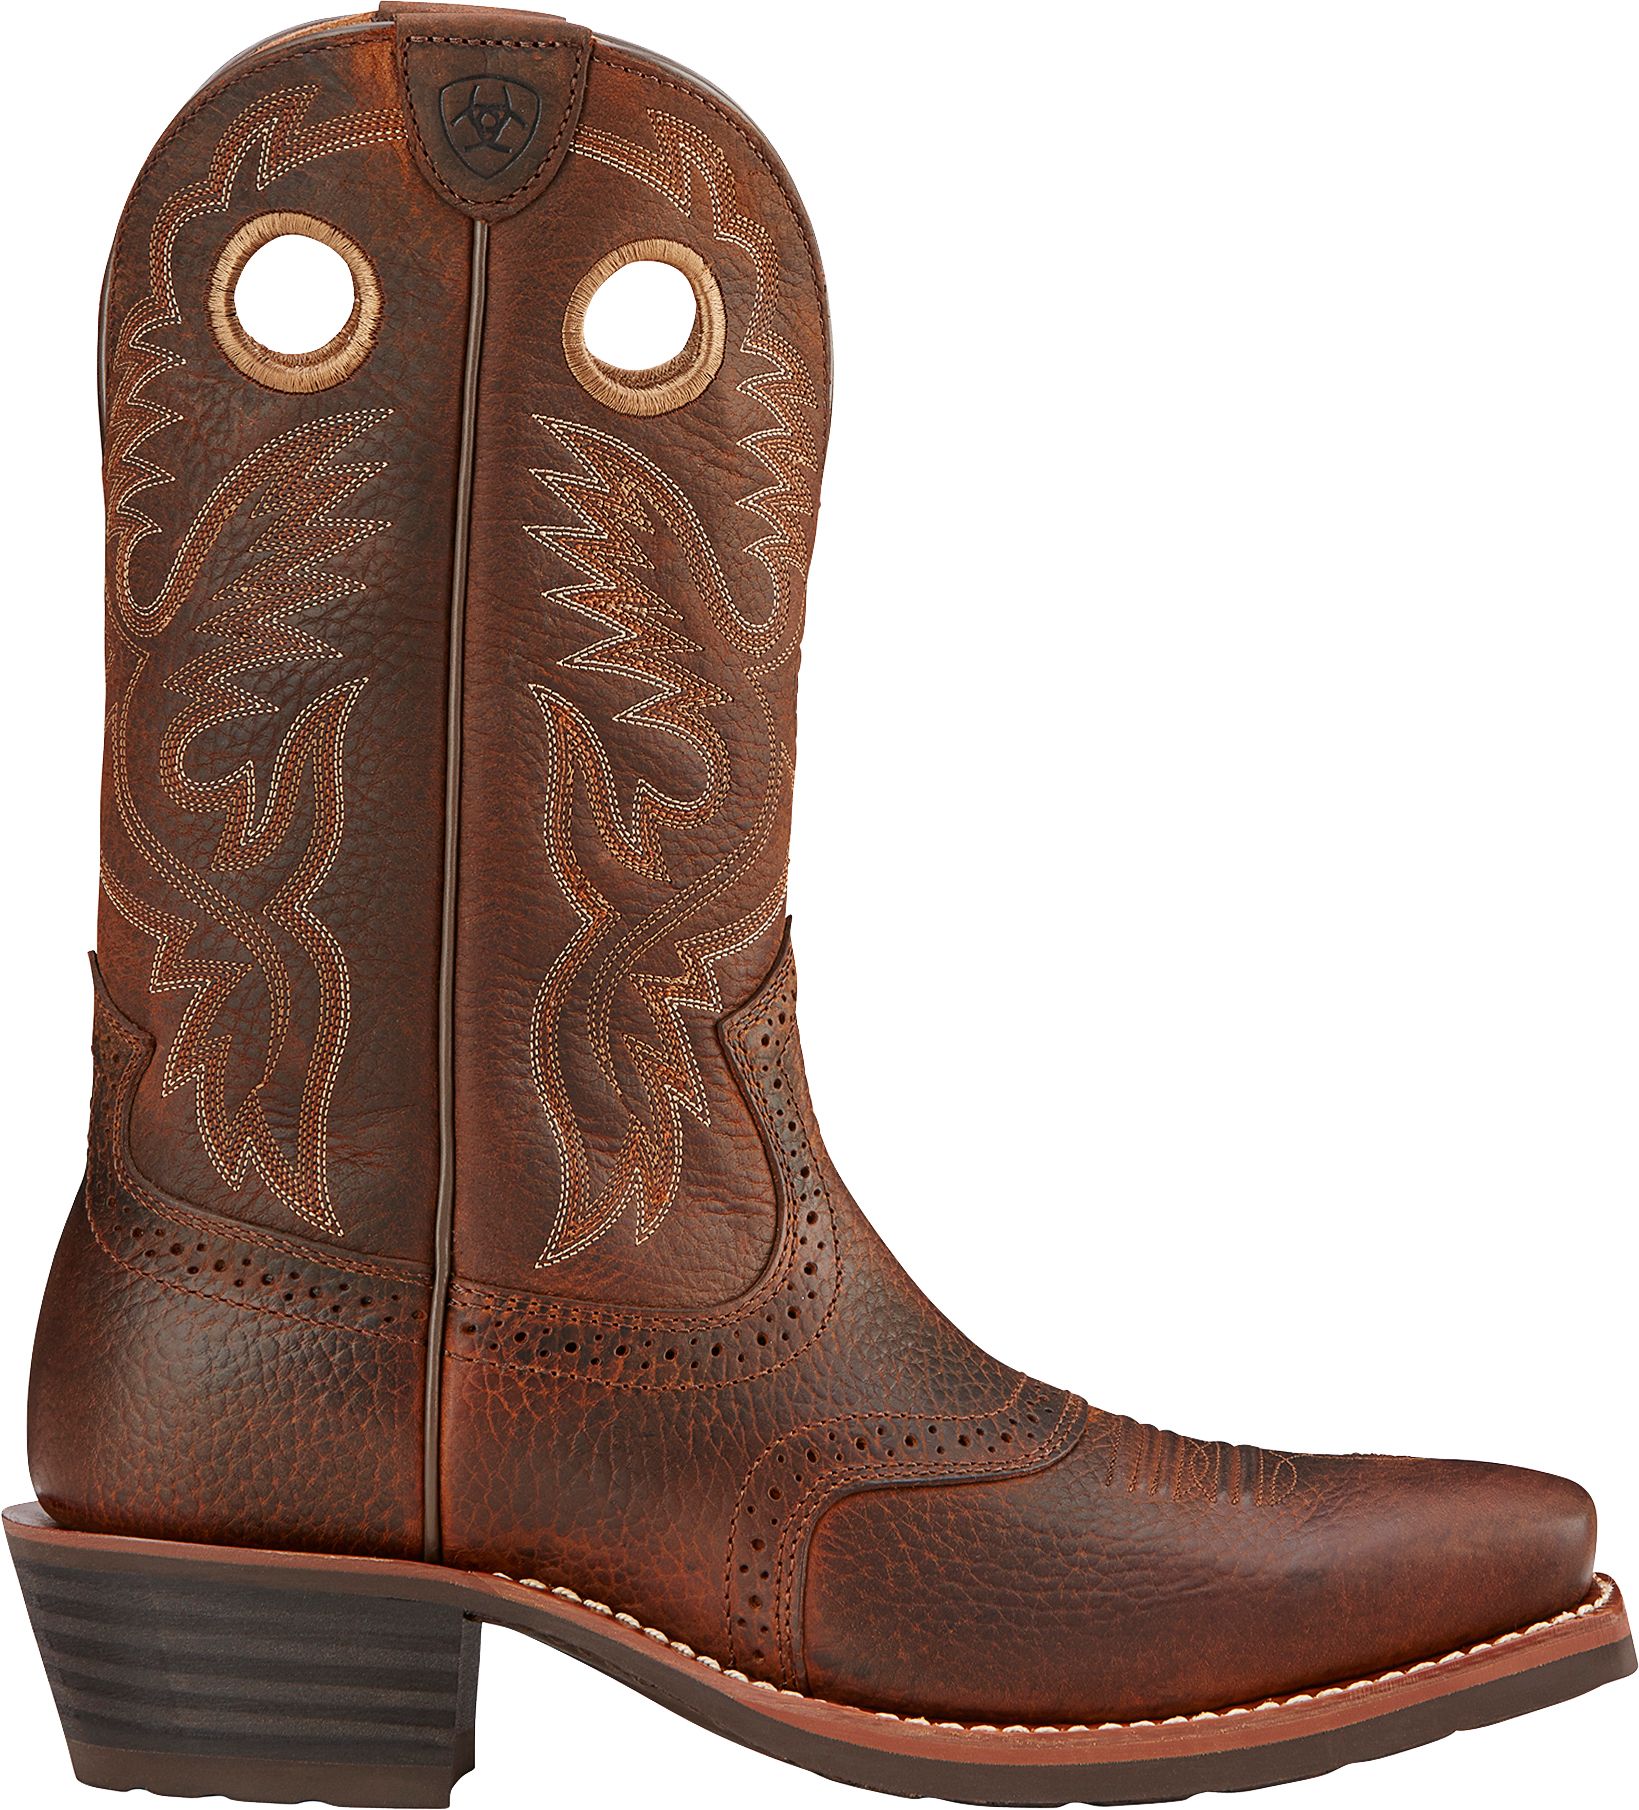 ariat men's roughstock heritage western boots